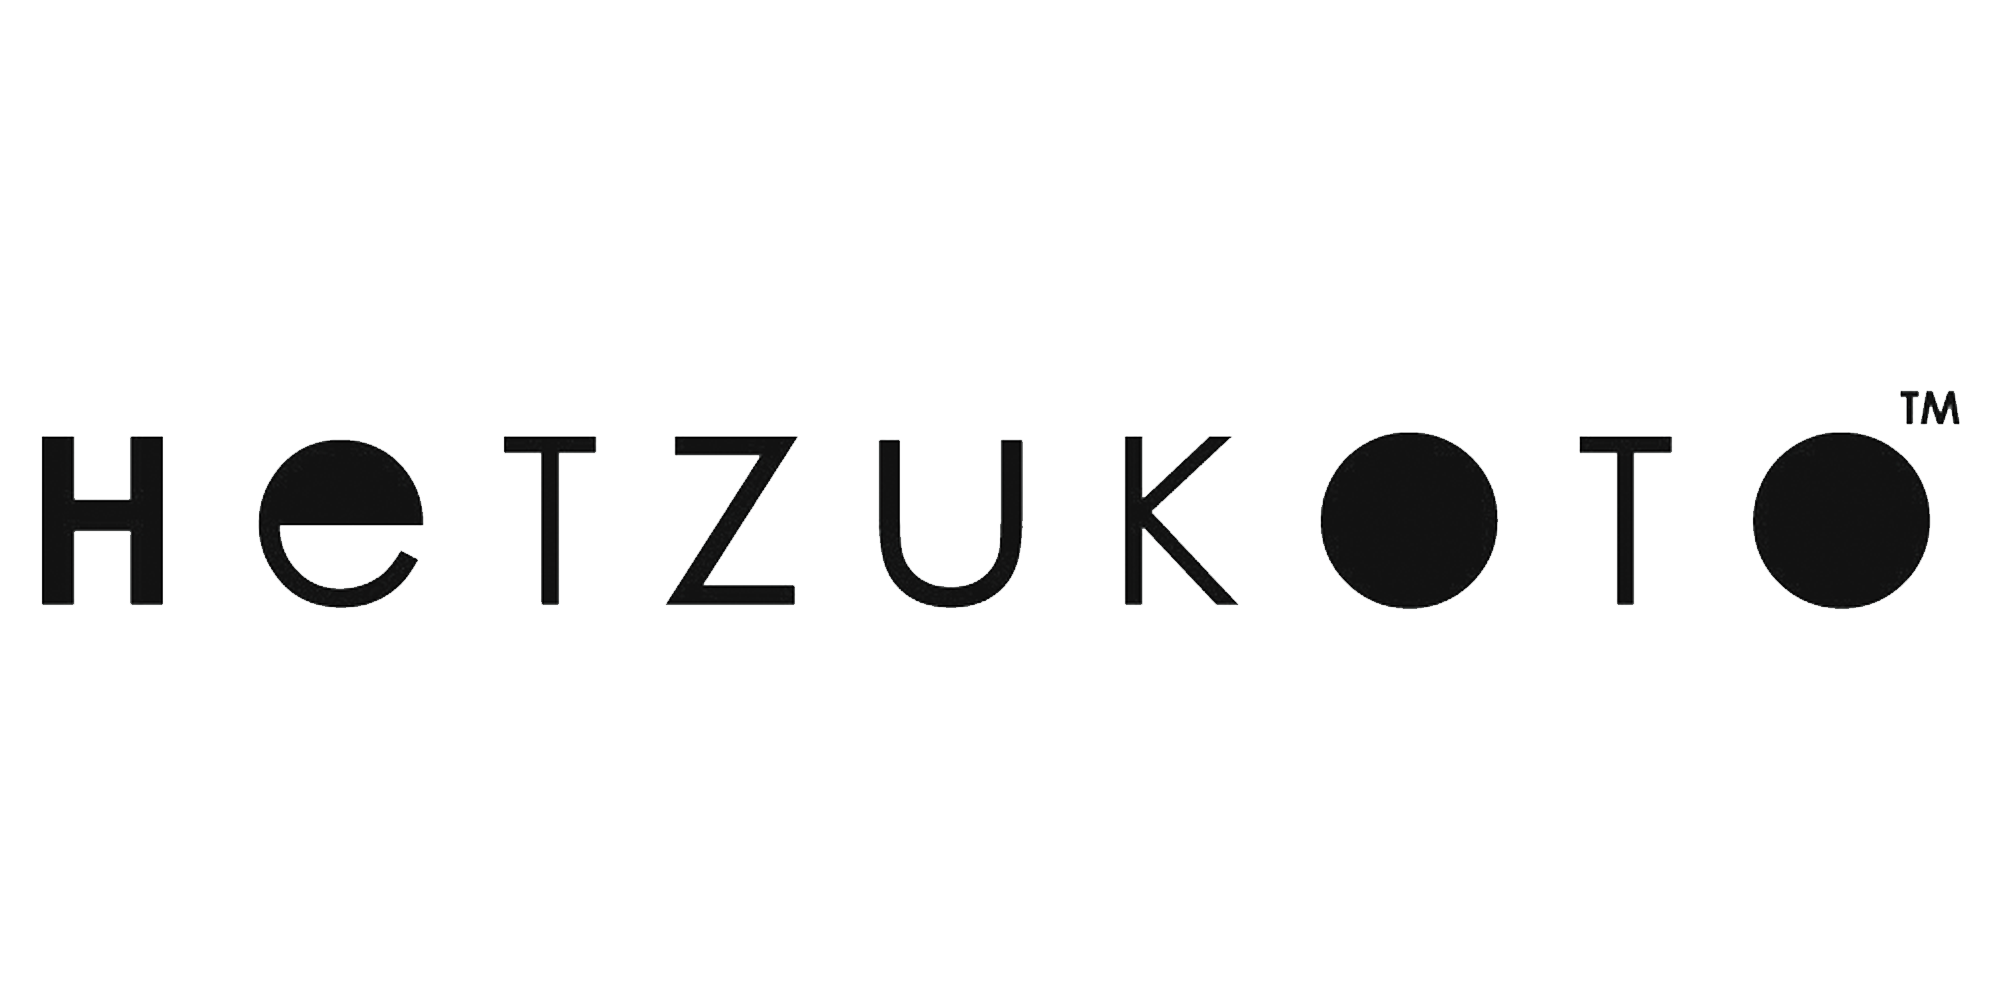 Louis Vuitton Kulturtasche – Glück & Glanz CGN GmbH